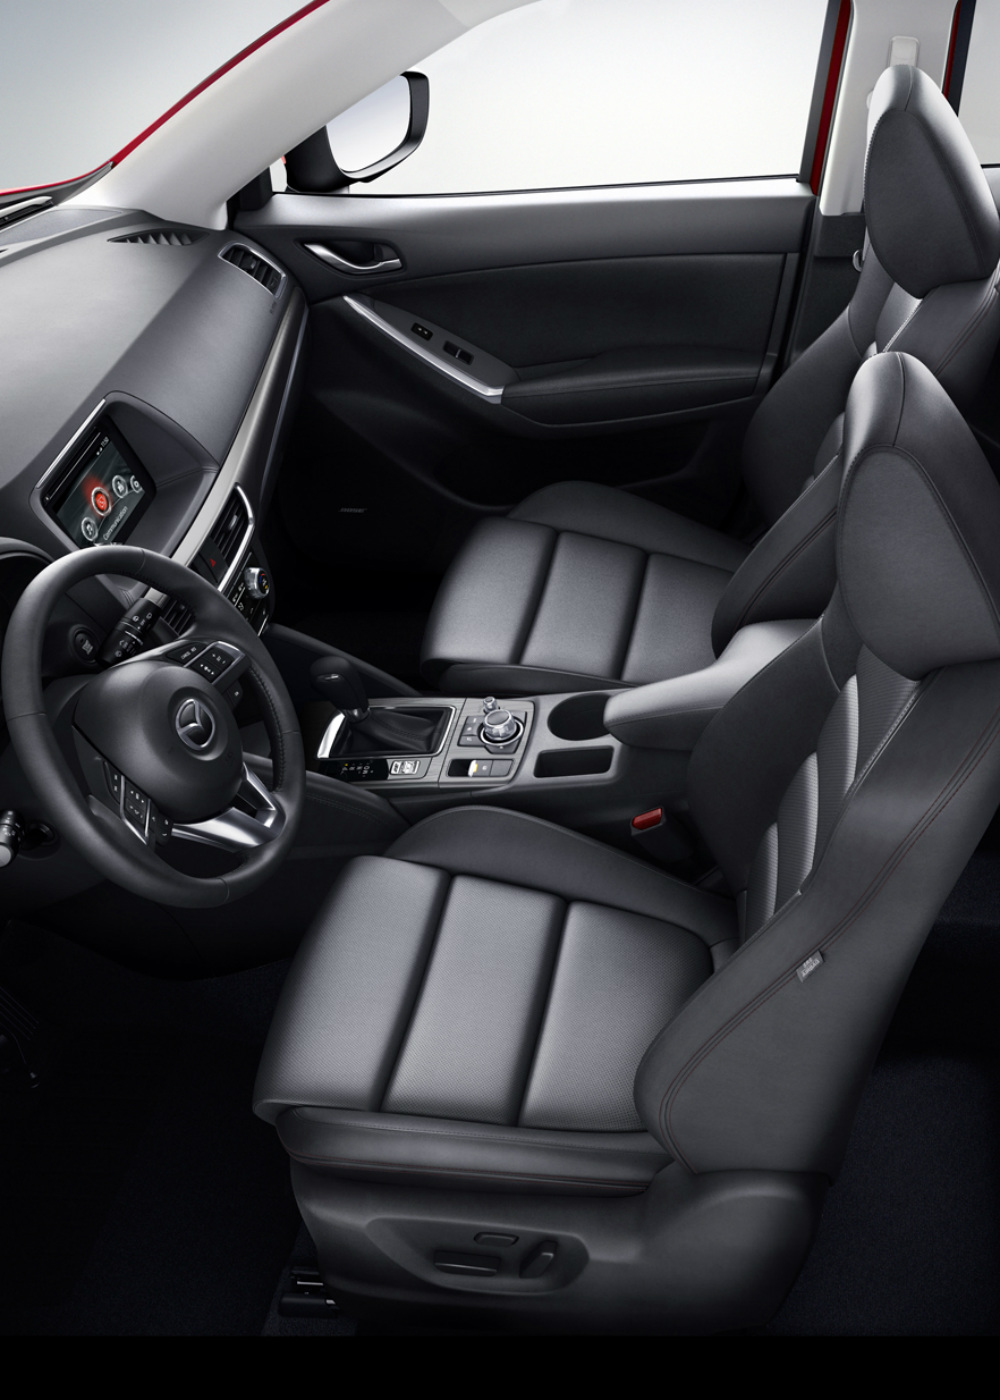 2015 Mazda CX-5 Interior